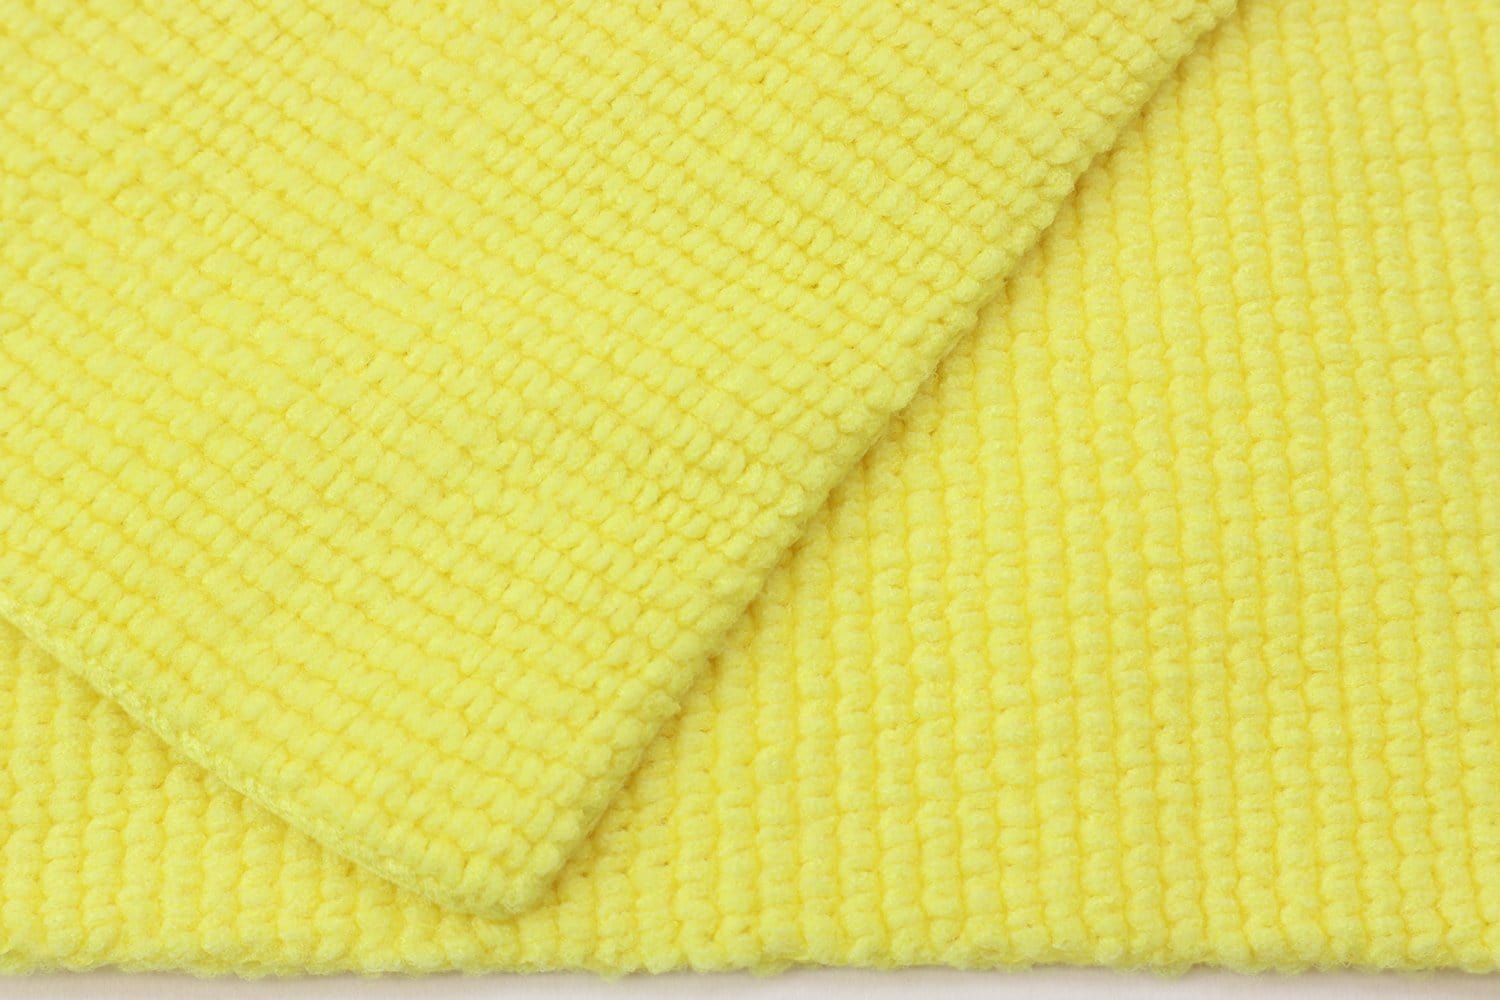 Autofiber Towel [Korean Pearl 300] Edgeless Detailing Towels (16 in. x 16 in. 300 gsm) 10 pack BULK BUNDLE